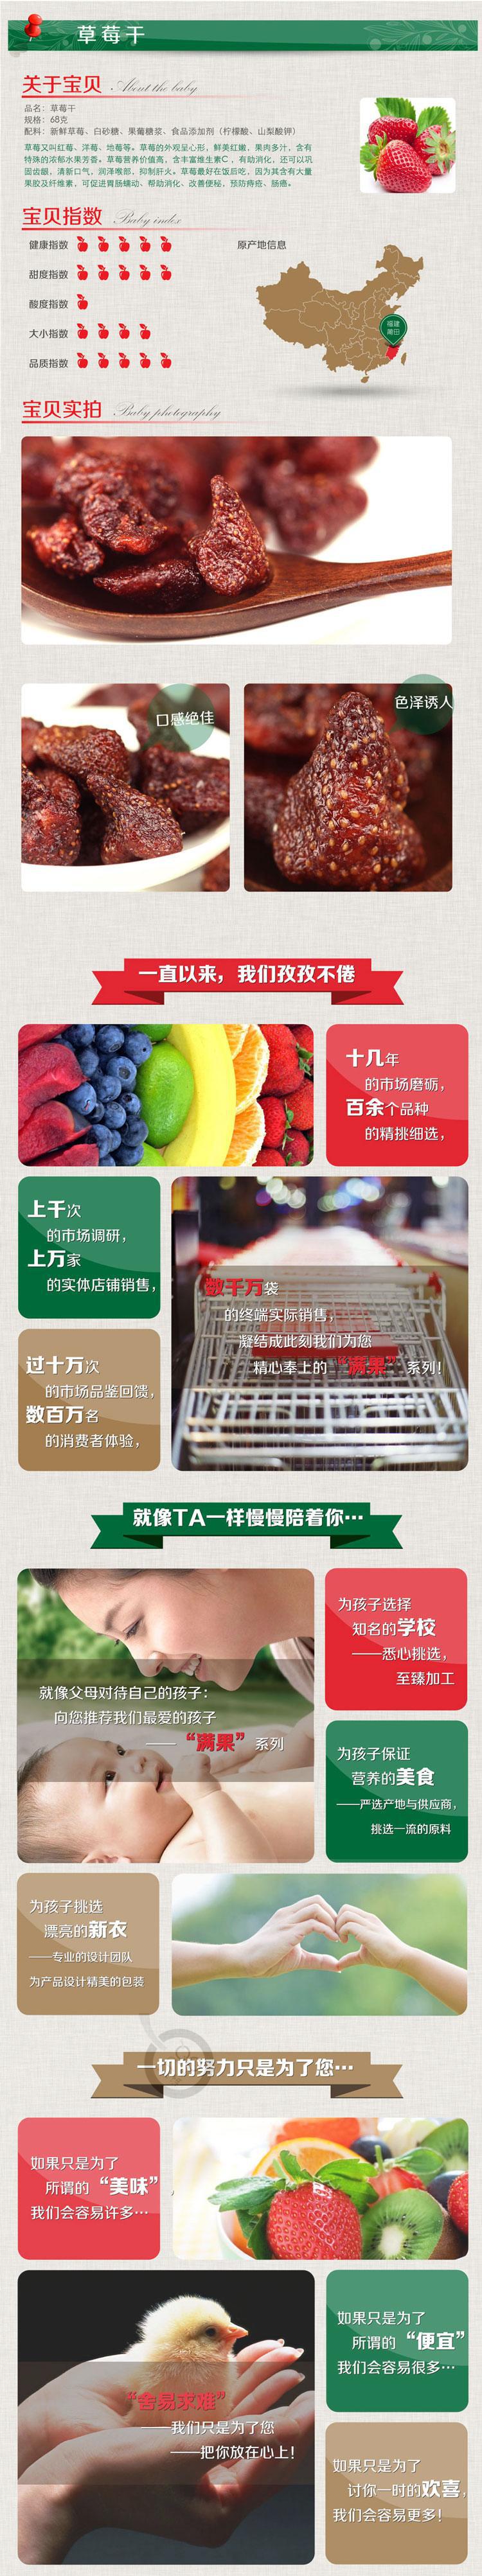 【大福记】满果庄园 草莓干 68g